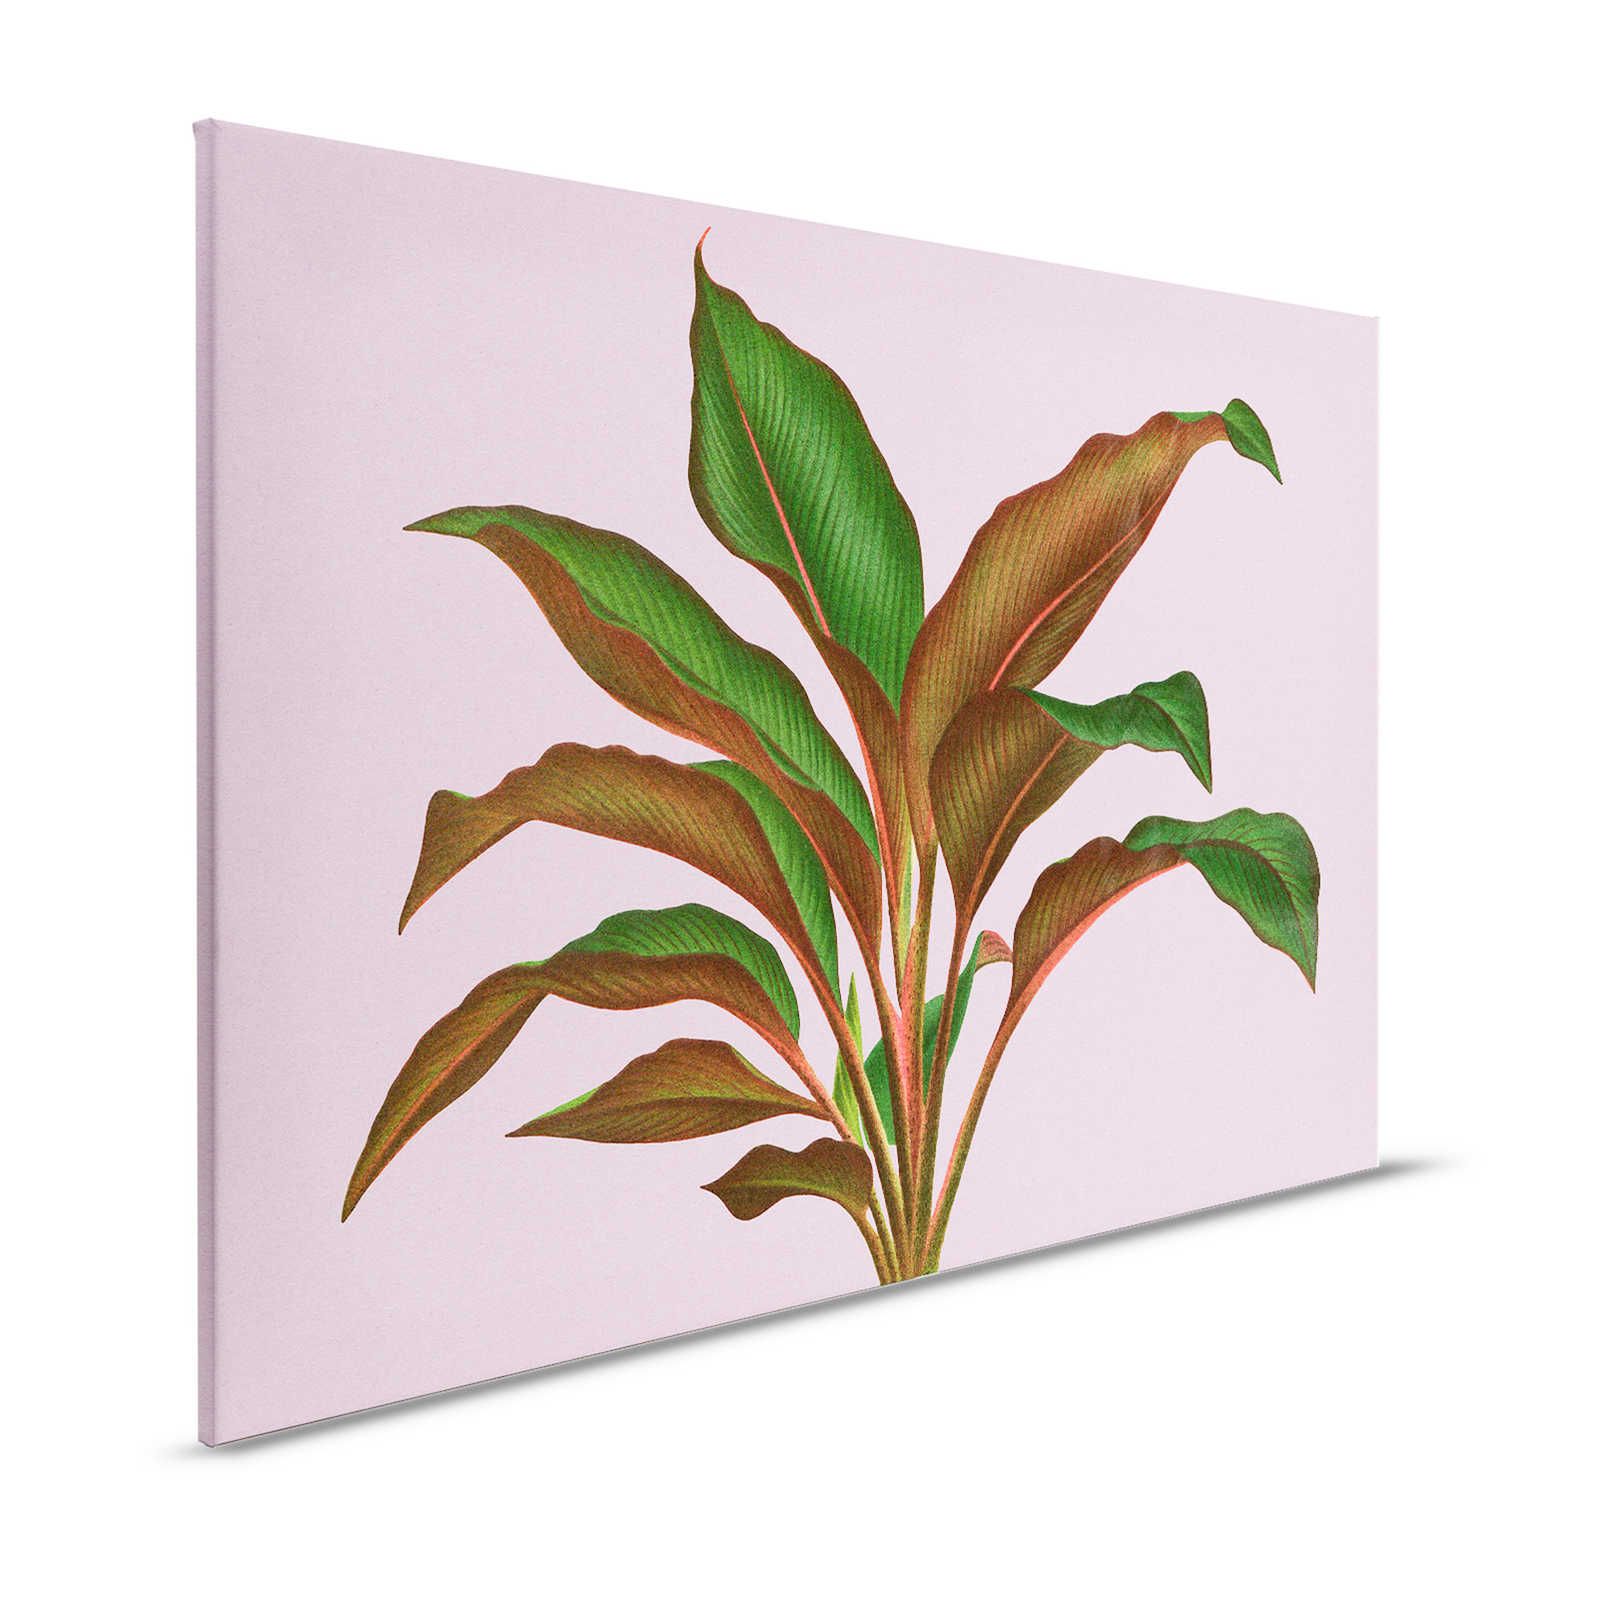 Leaf Garden 3 - Feuilles Tableau sur toile Rose avec feuille de fougère tropicale - 1,20 m x 0,80 m
